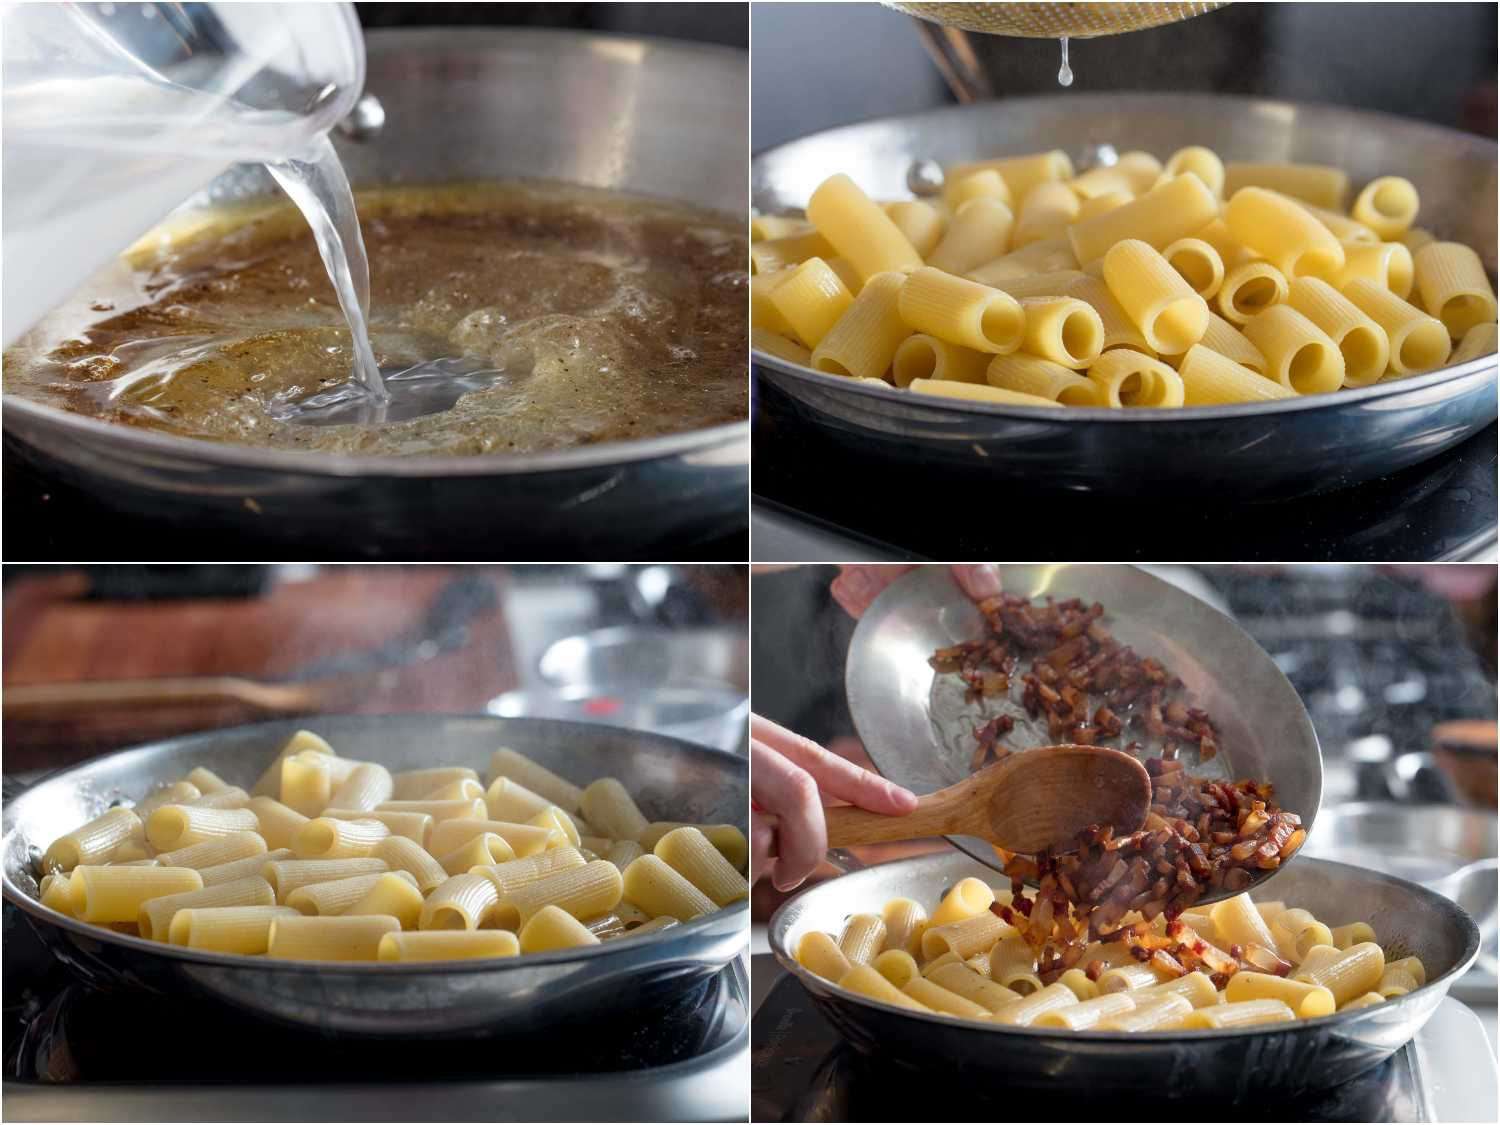 制作酱汁乳剂和长时间煮面食的工艺镜头。